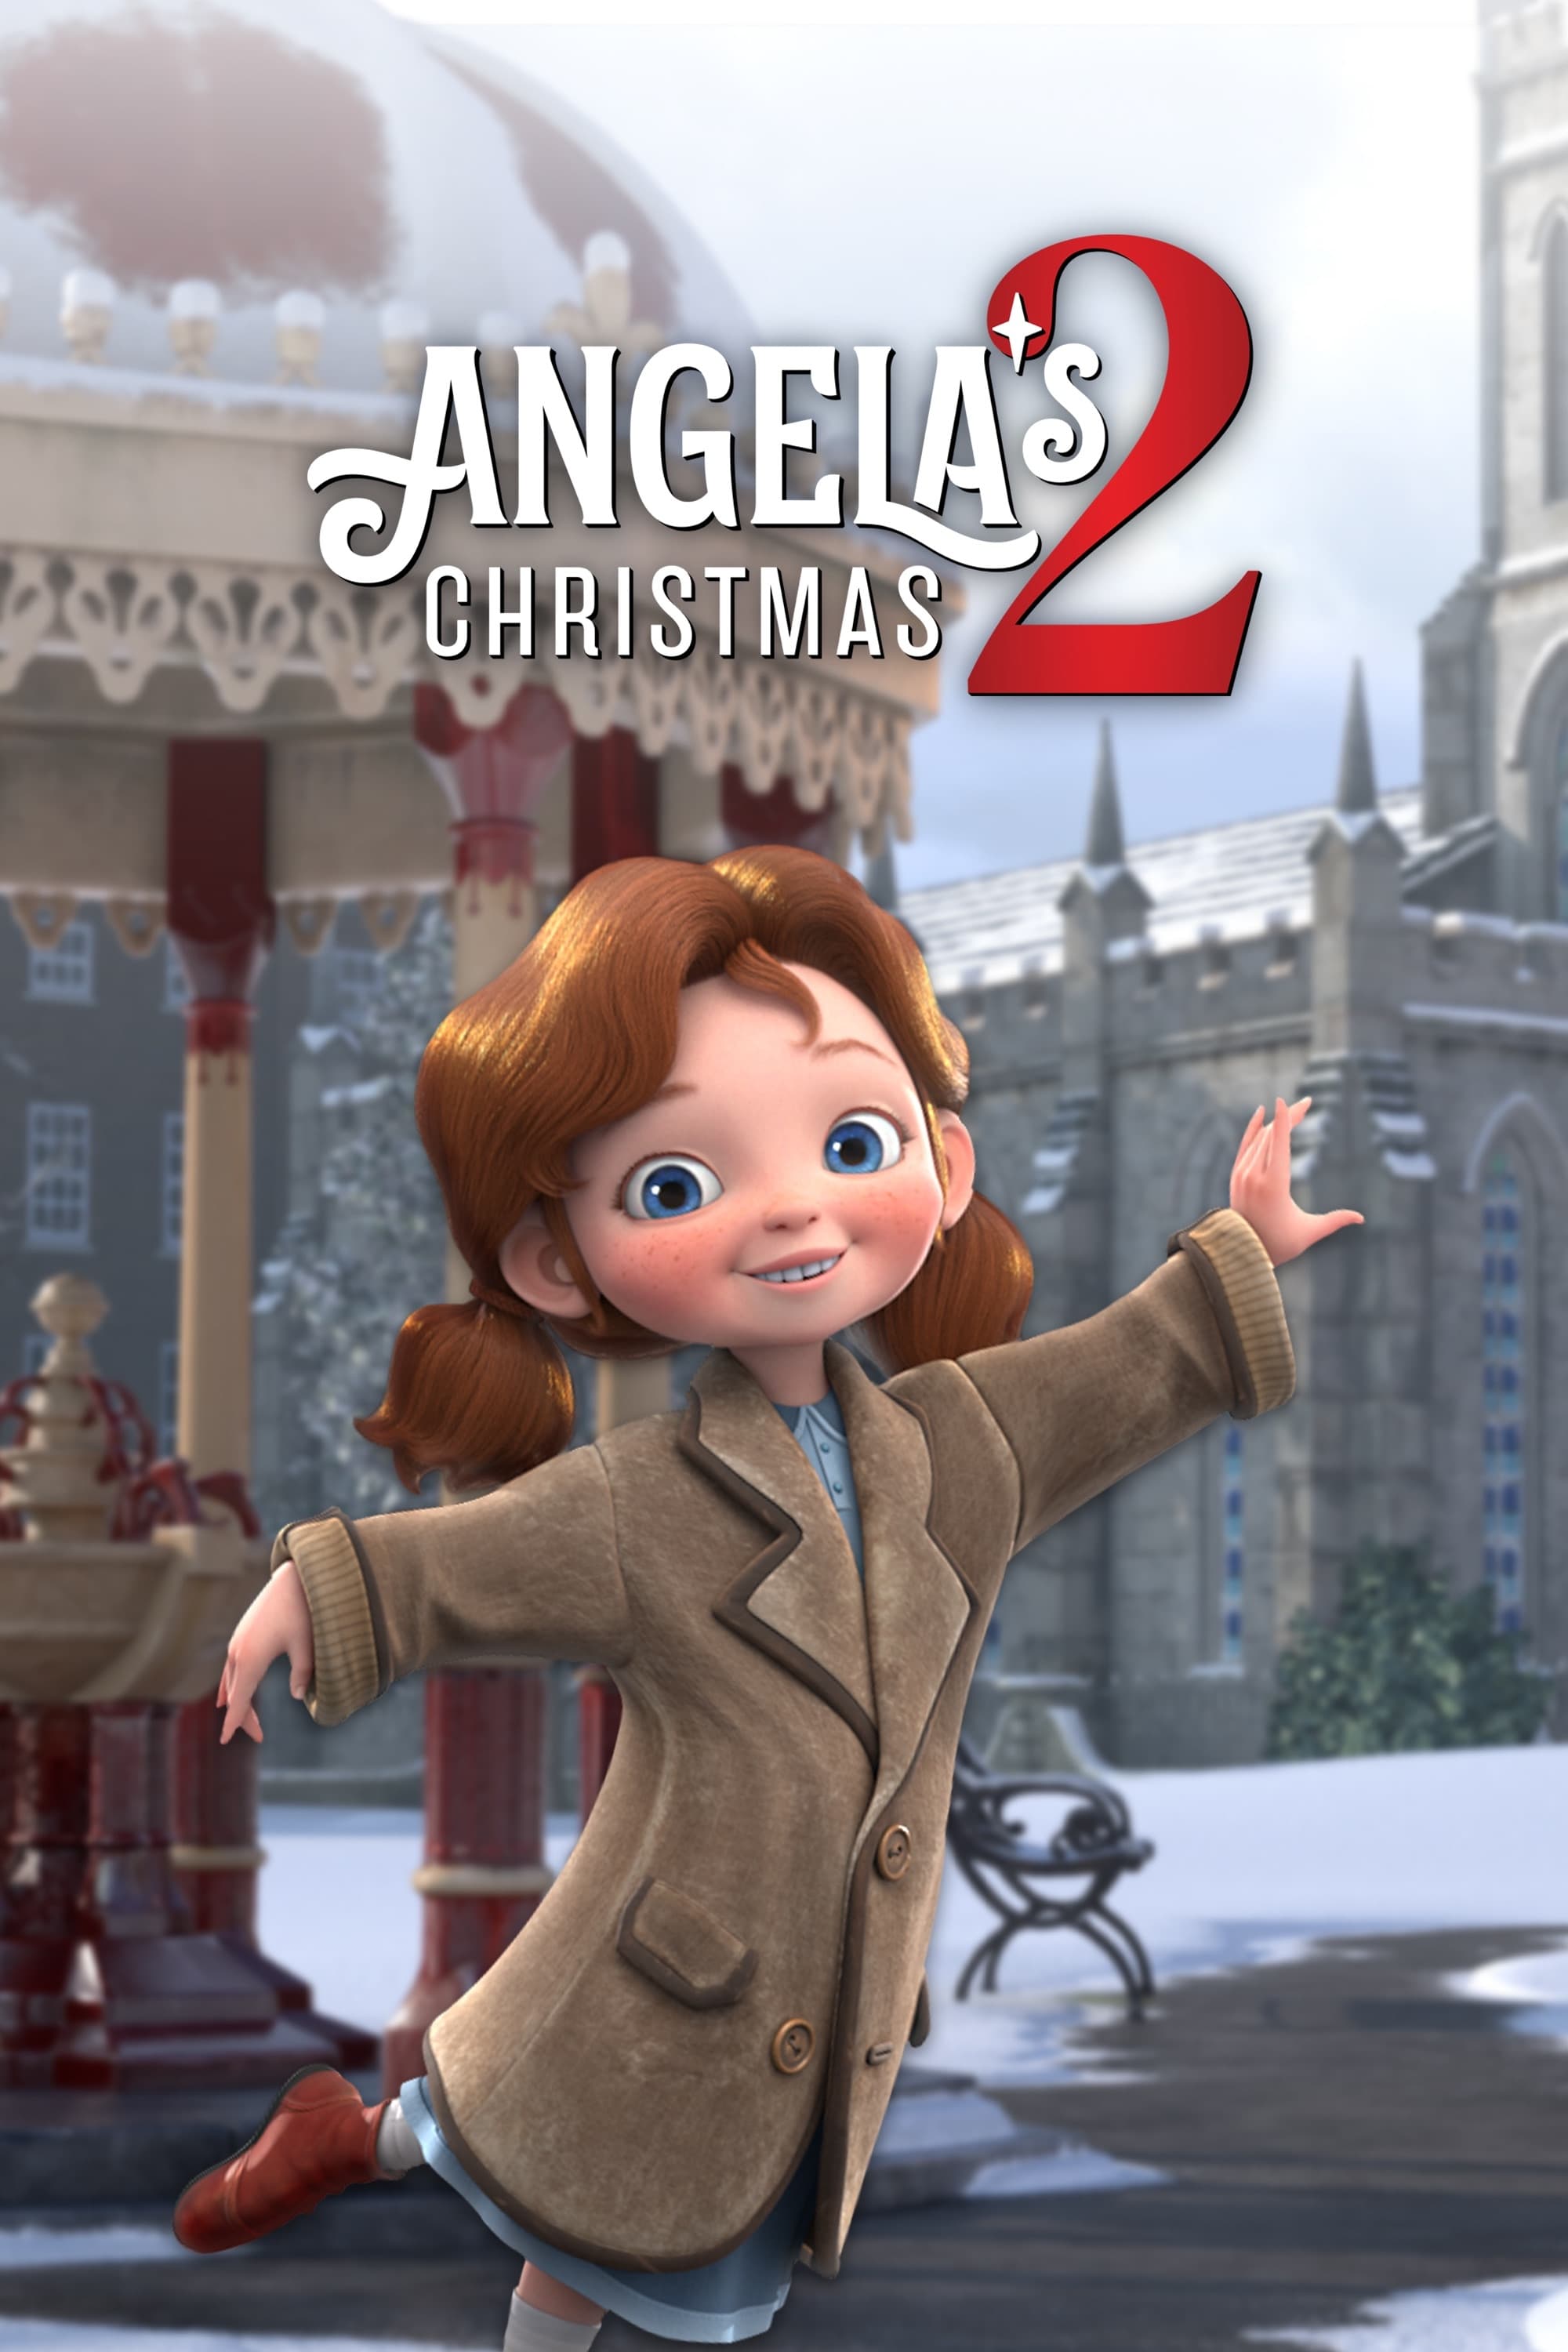 Angelas Weihnachtswunsch